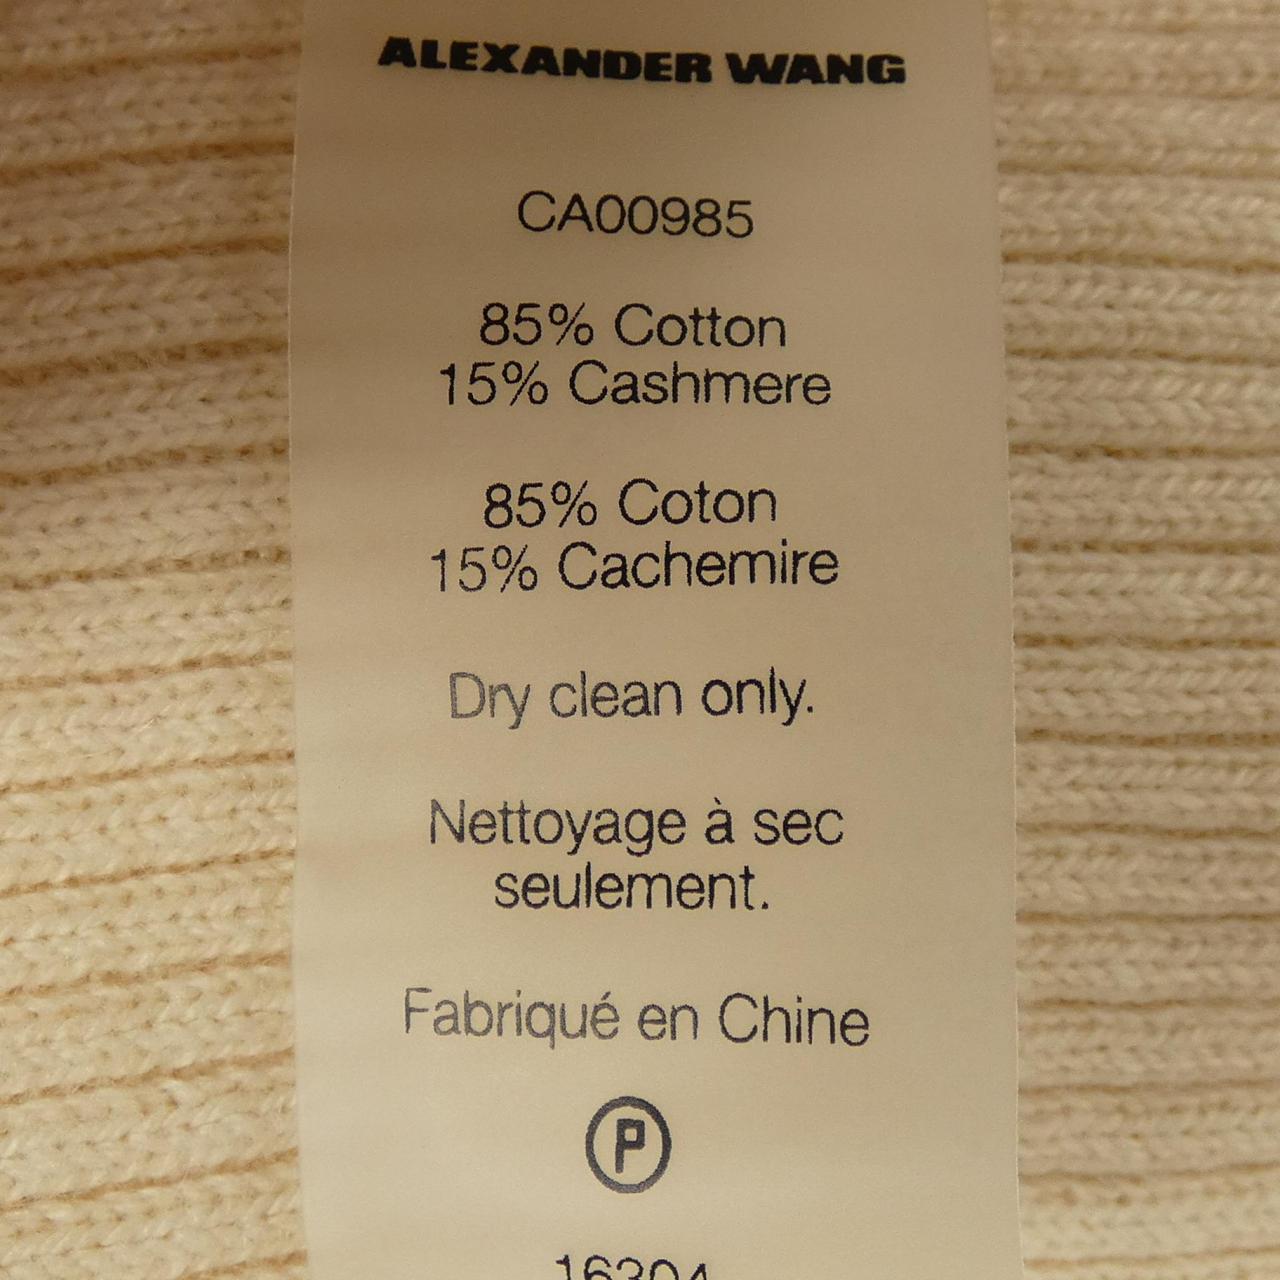 ALEXANDER WANG ALEXANDER WANG Knitwear